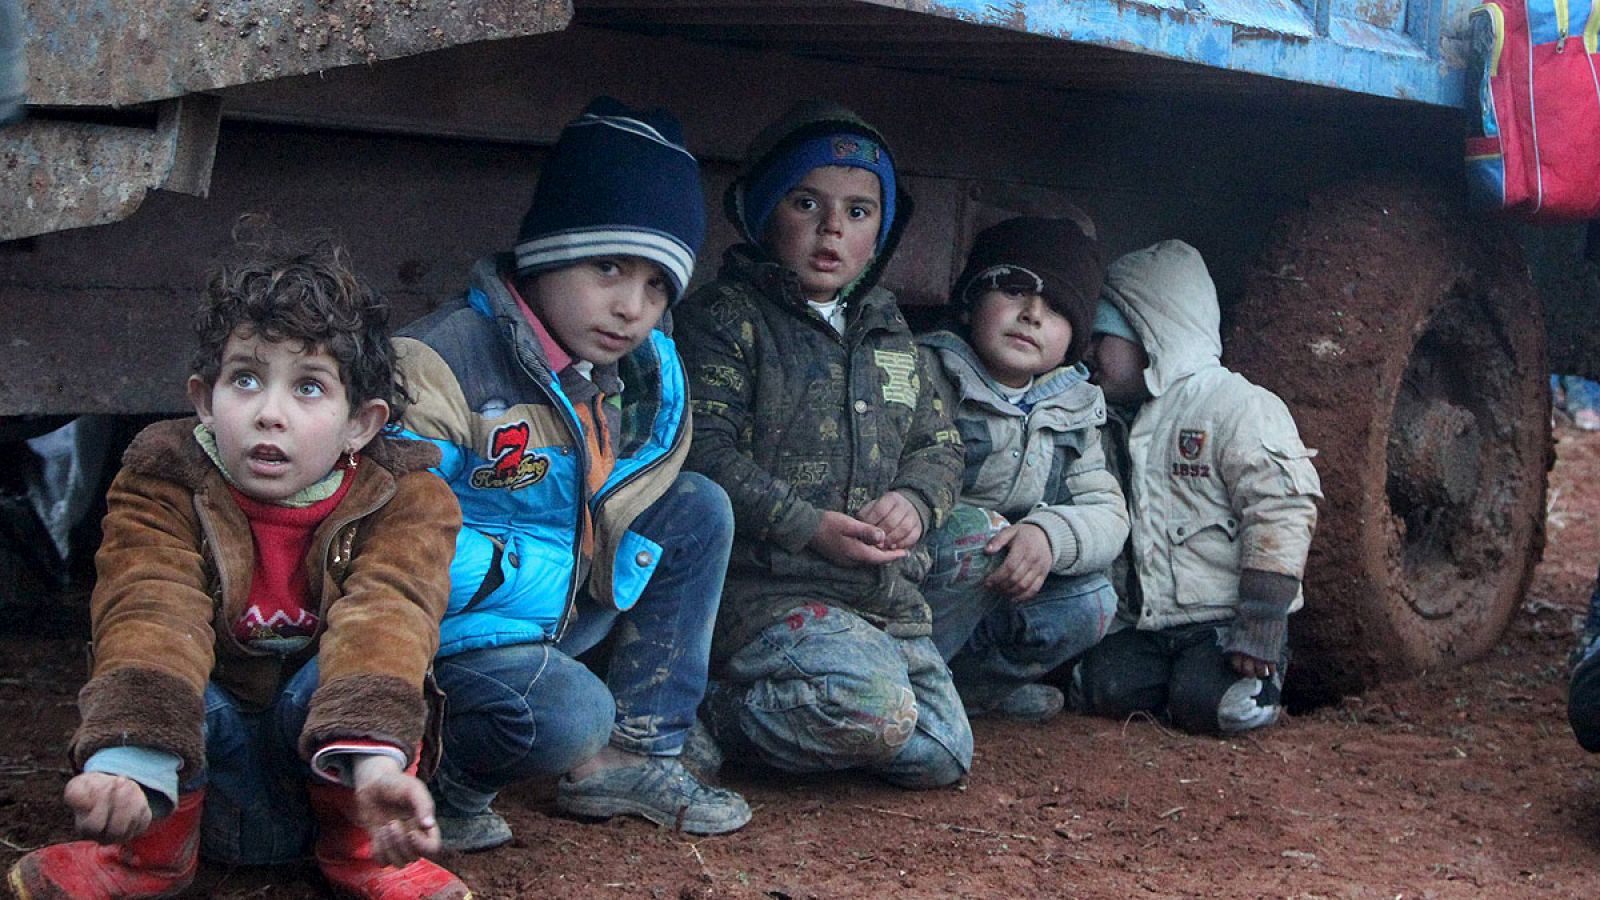 CRISTINA SÁNCHEZ/ RNE.- La oposición siria, que se encuentra en Ginebra para negociar la paz en Siria con la delegación del Gobierno de Bachar al Asad, exige que se cumpla la resolución de la ONU como requisito para sentarse a negociar. Piden que se desbloquee la entrada de la ayuda humanitaria y se terminen los bombardeos. "Es importante para nosotros parar las masacres. Nuestro pueblo, nuestro niños están muriendo", ha señalado el portavoz de la delegación opositora.